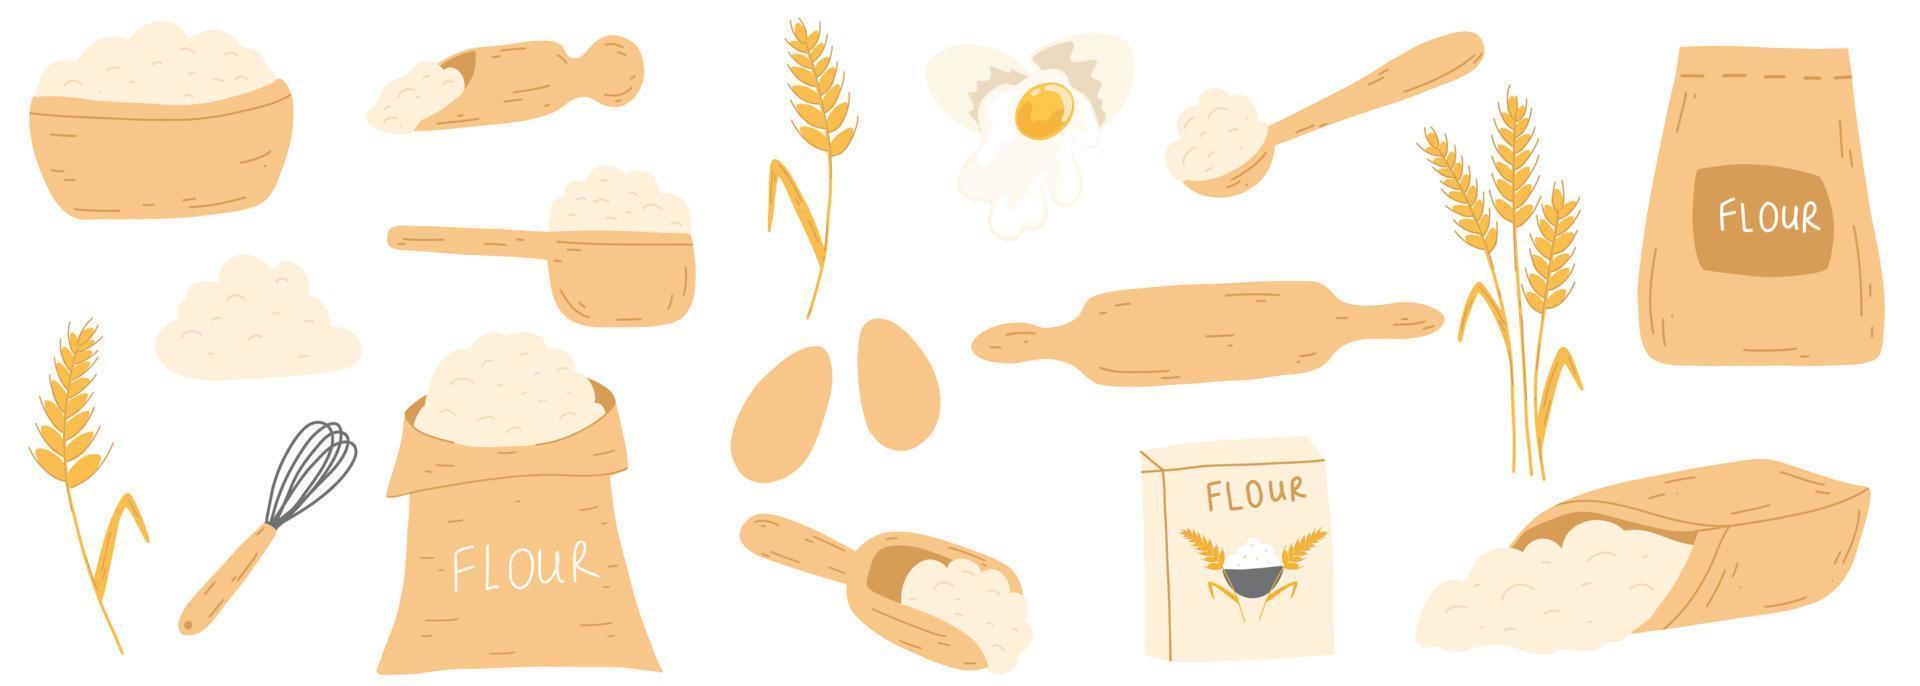 ingredientes para hornear en estilo plano de dibujos animados. bolsa con harina, huevos, batidor de cocina, rodillo, espiga de oreja de trigo. conjunto de ilustración vectorial para pastelería vector